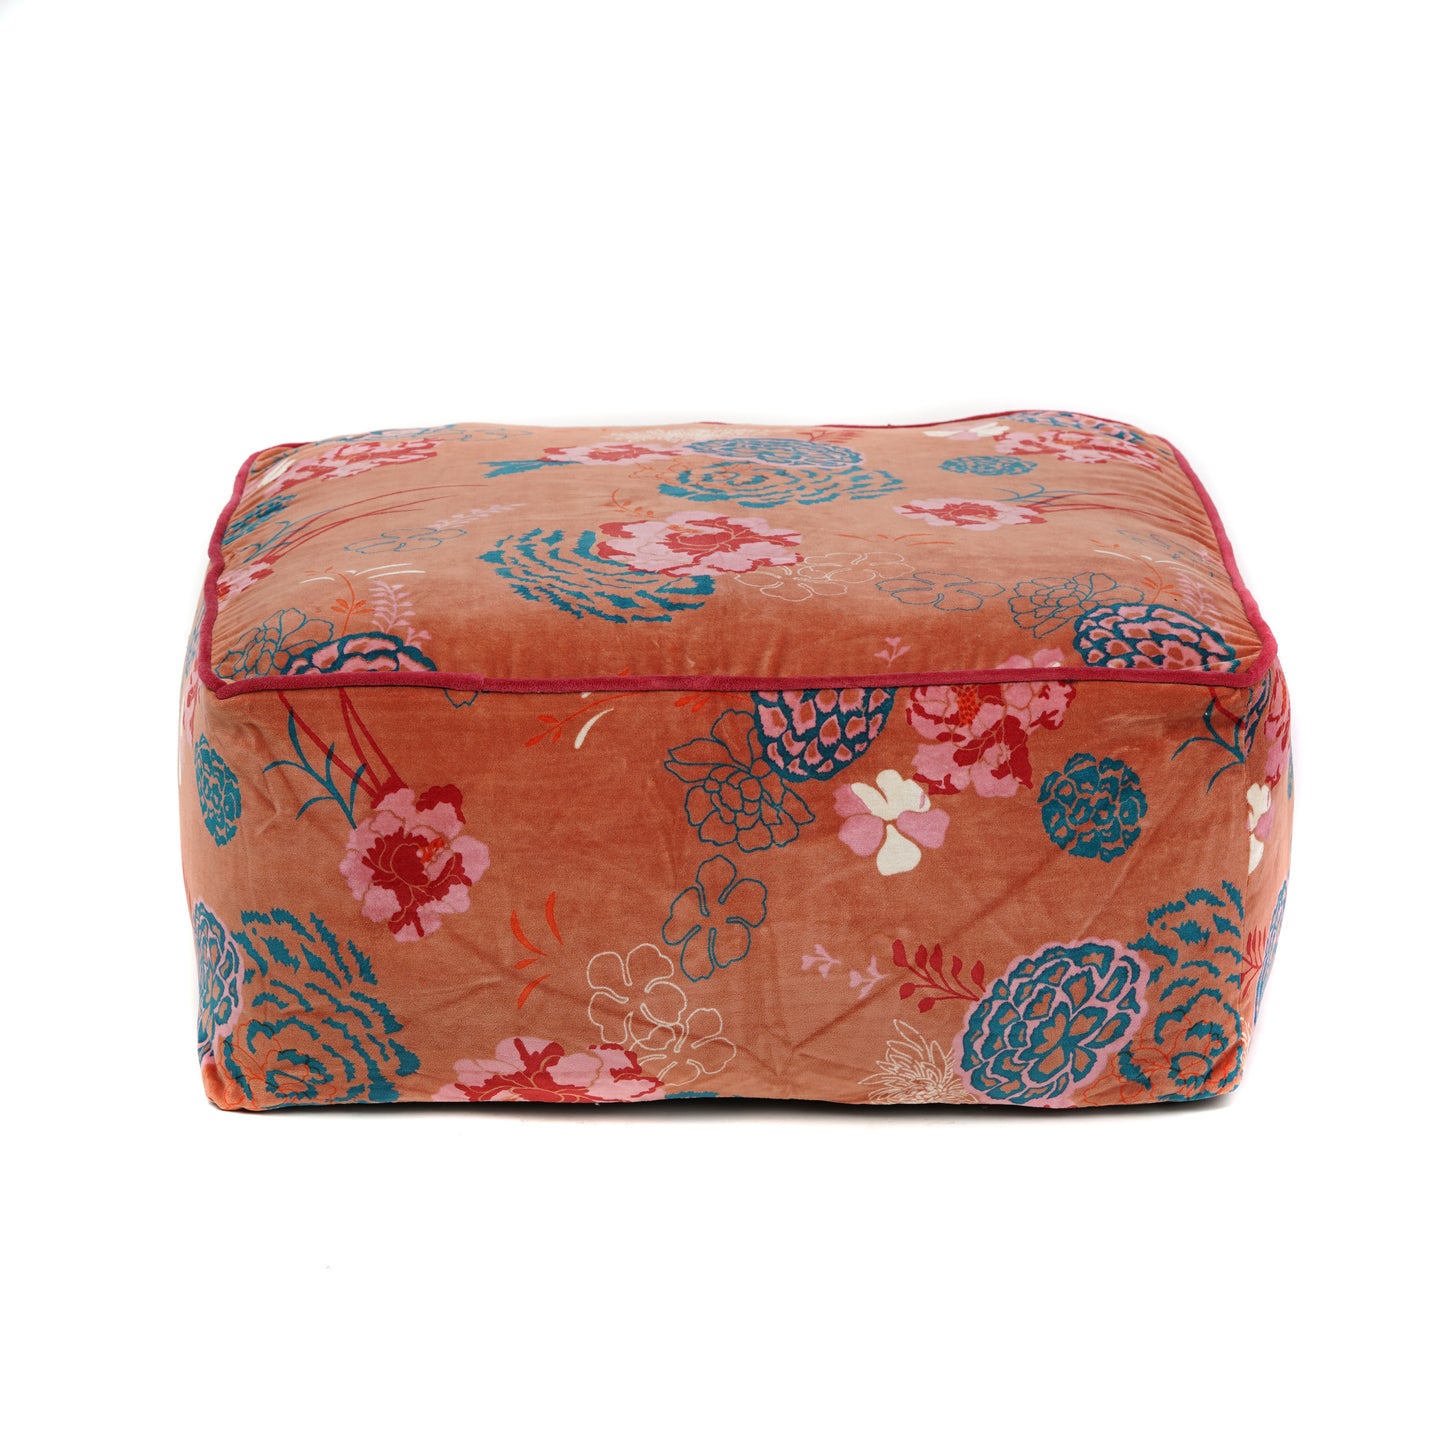 Blossom Velvet Square Ottoman / bean bag -Orange - The Teal Thread